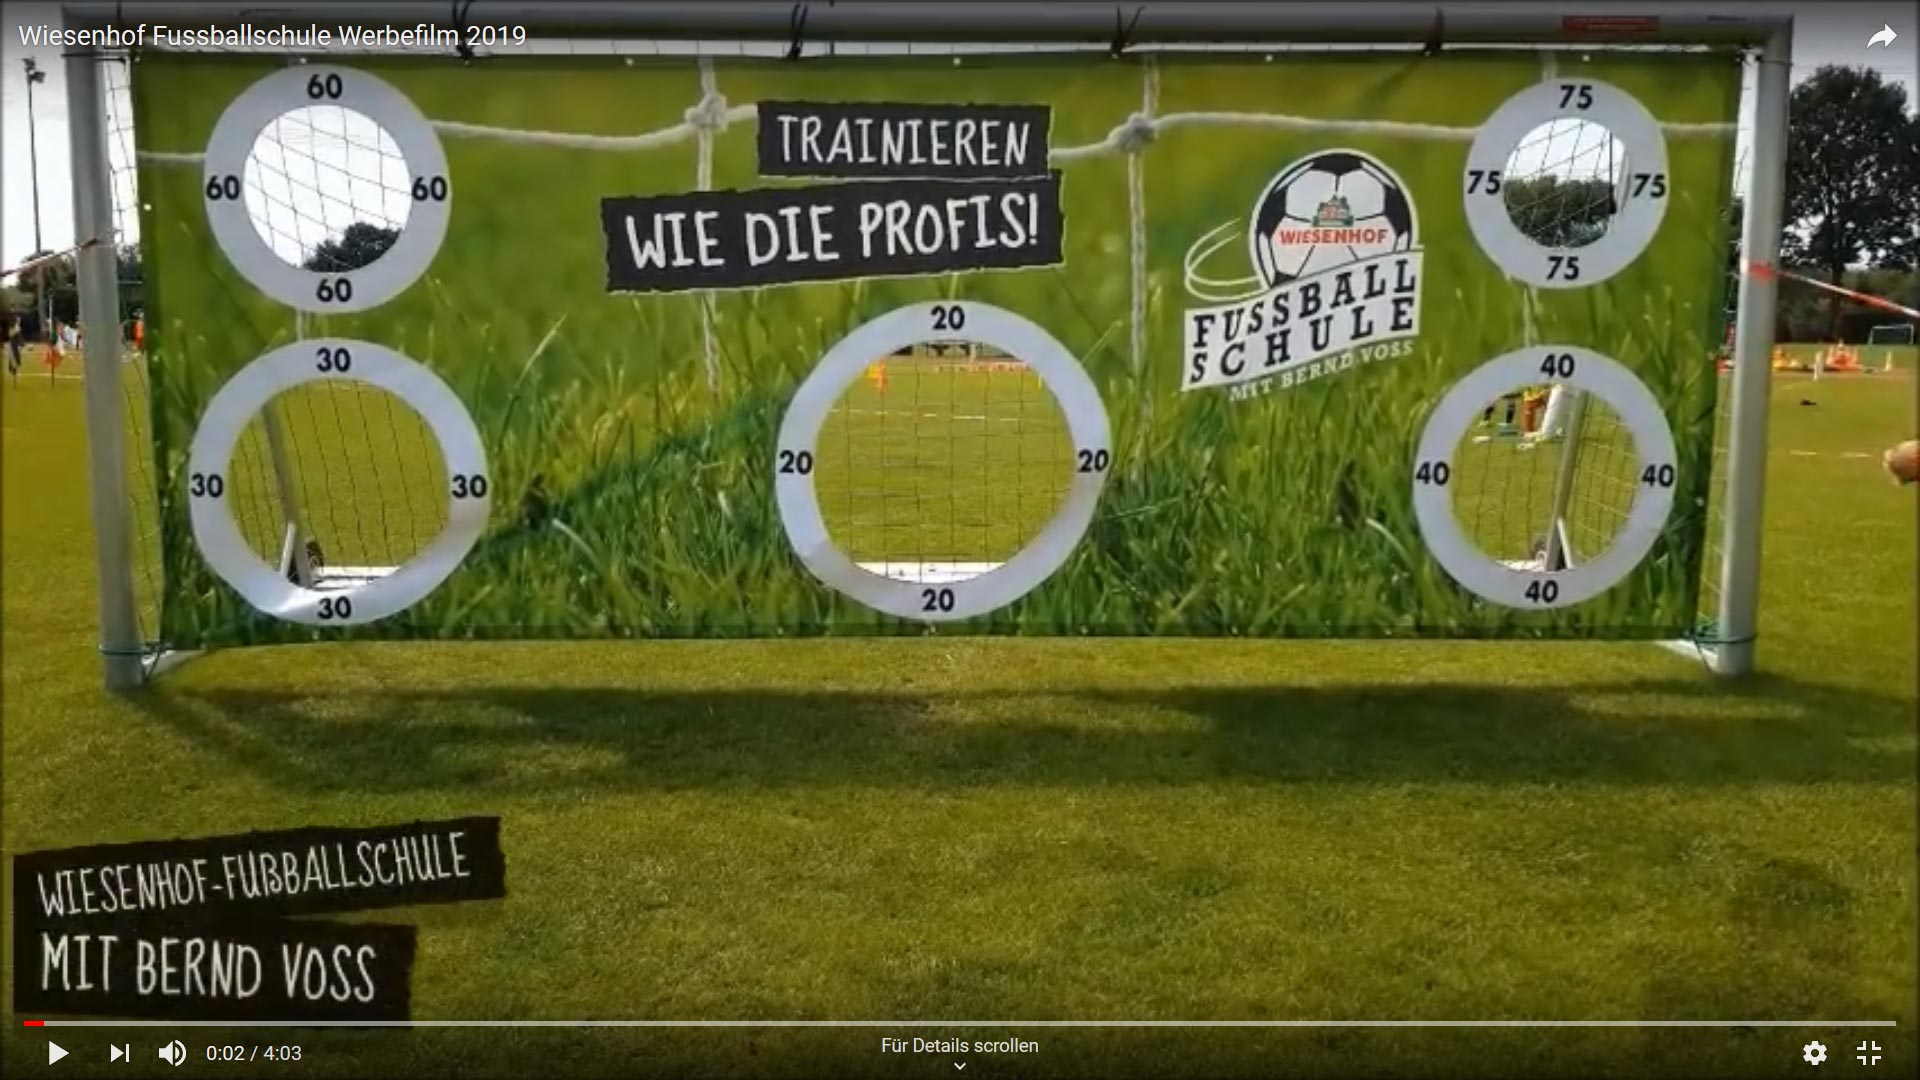 Wiesenhof Fußballschule Werbefilm 2019